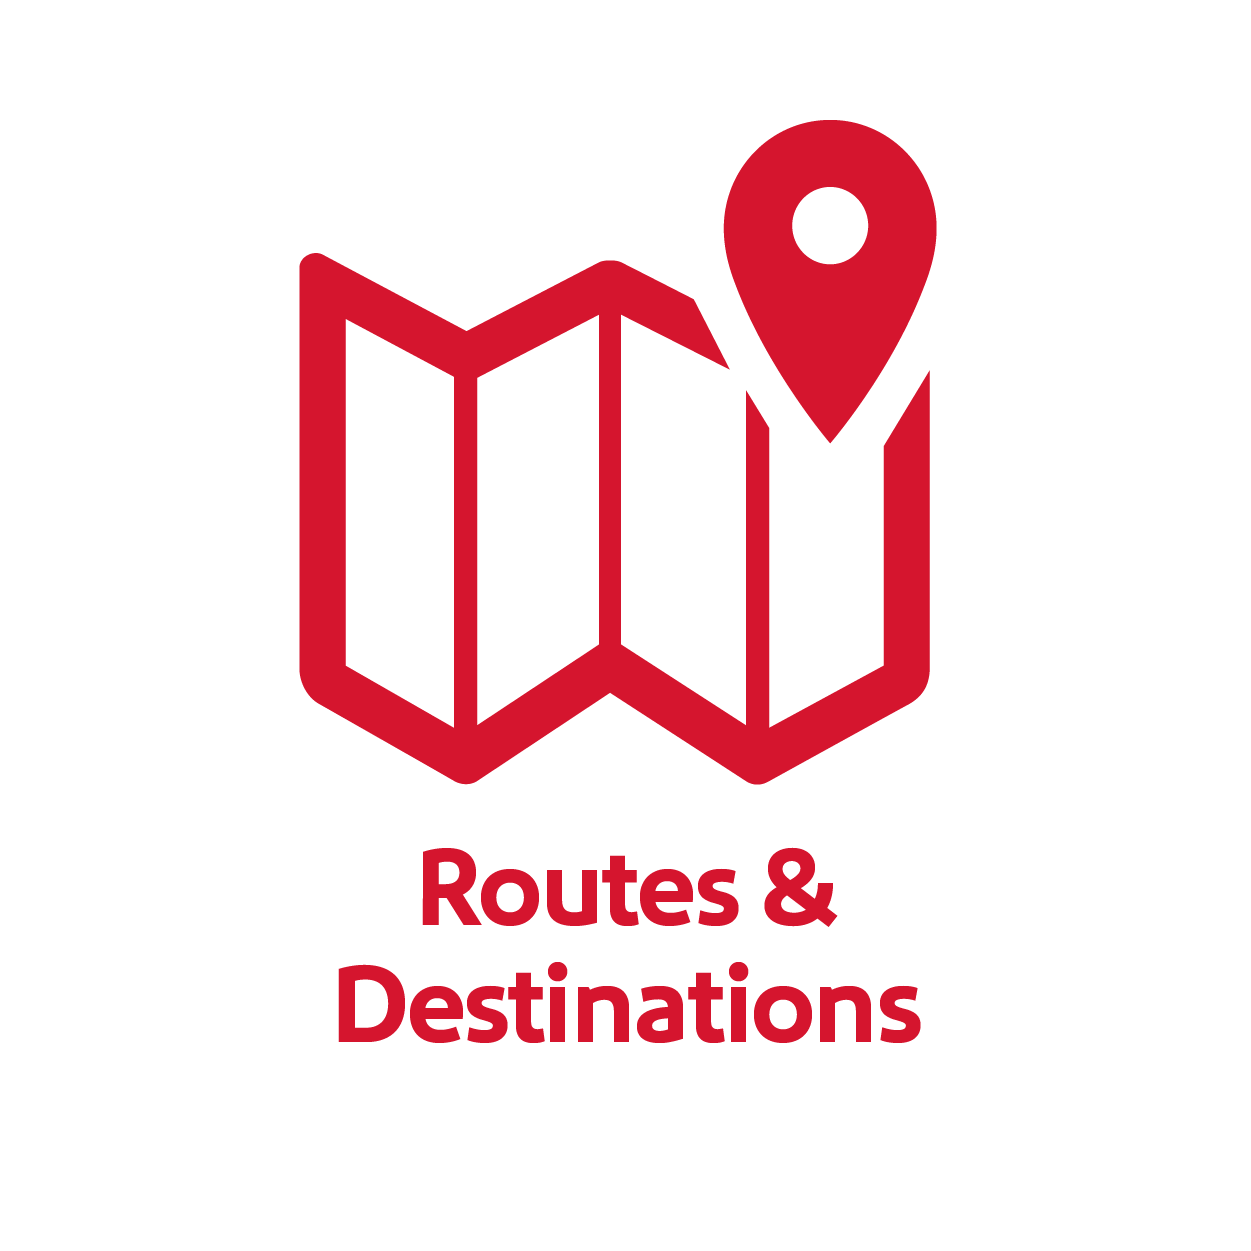 Routes & Destinations